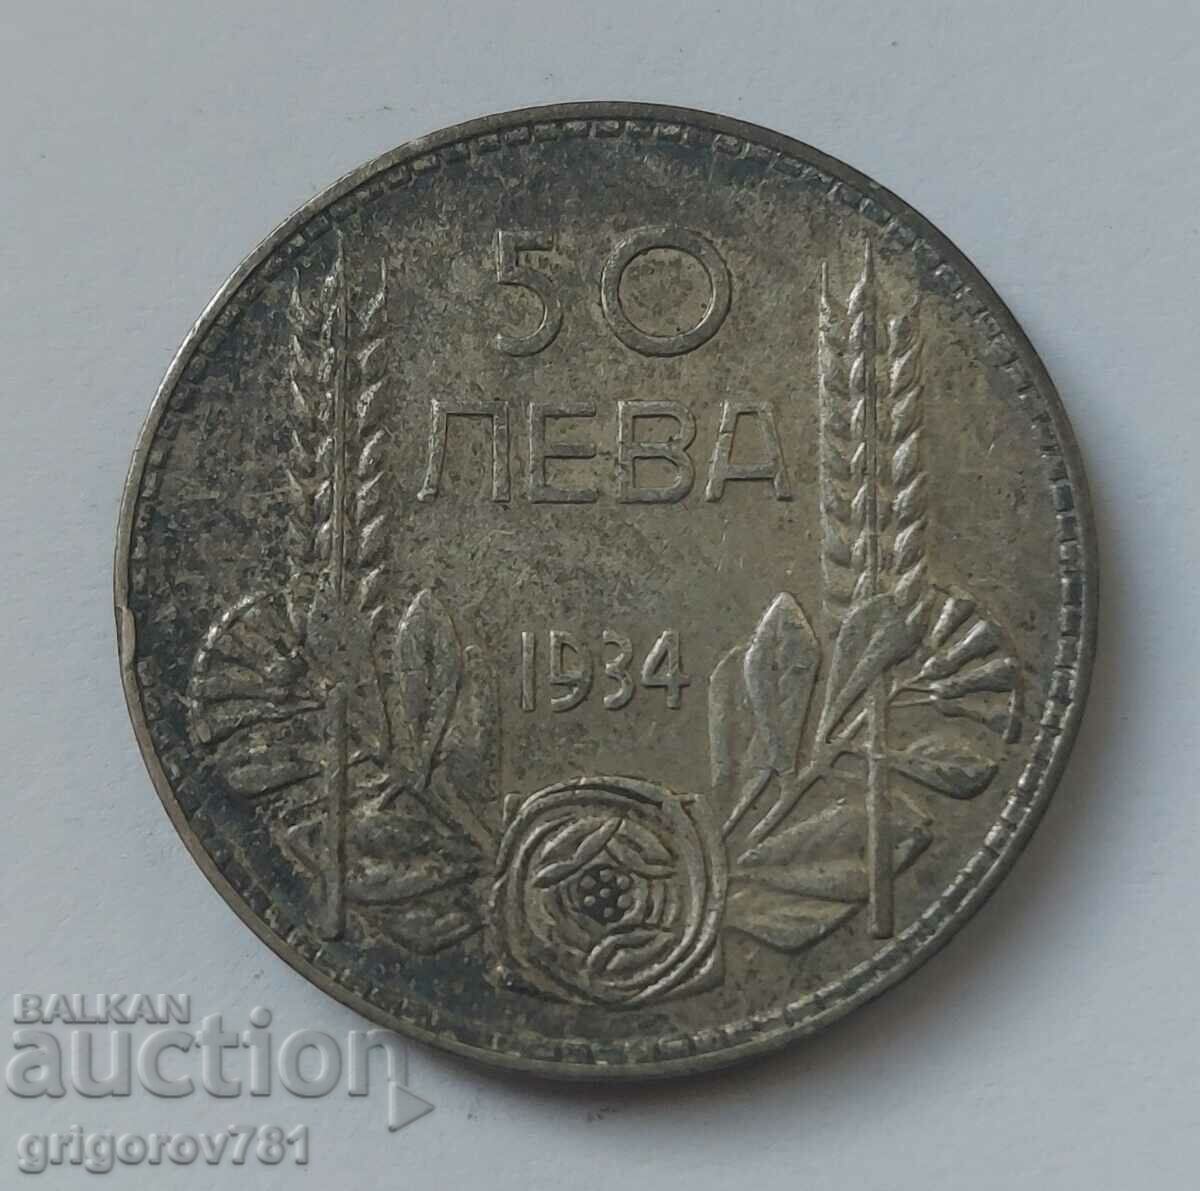 50 leva silver Bulgaria 1934 - silver coin #26